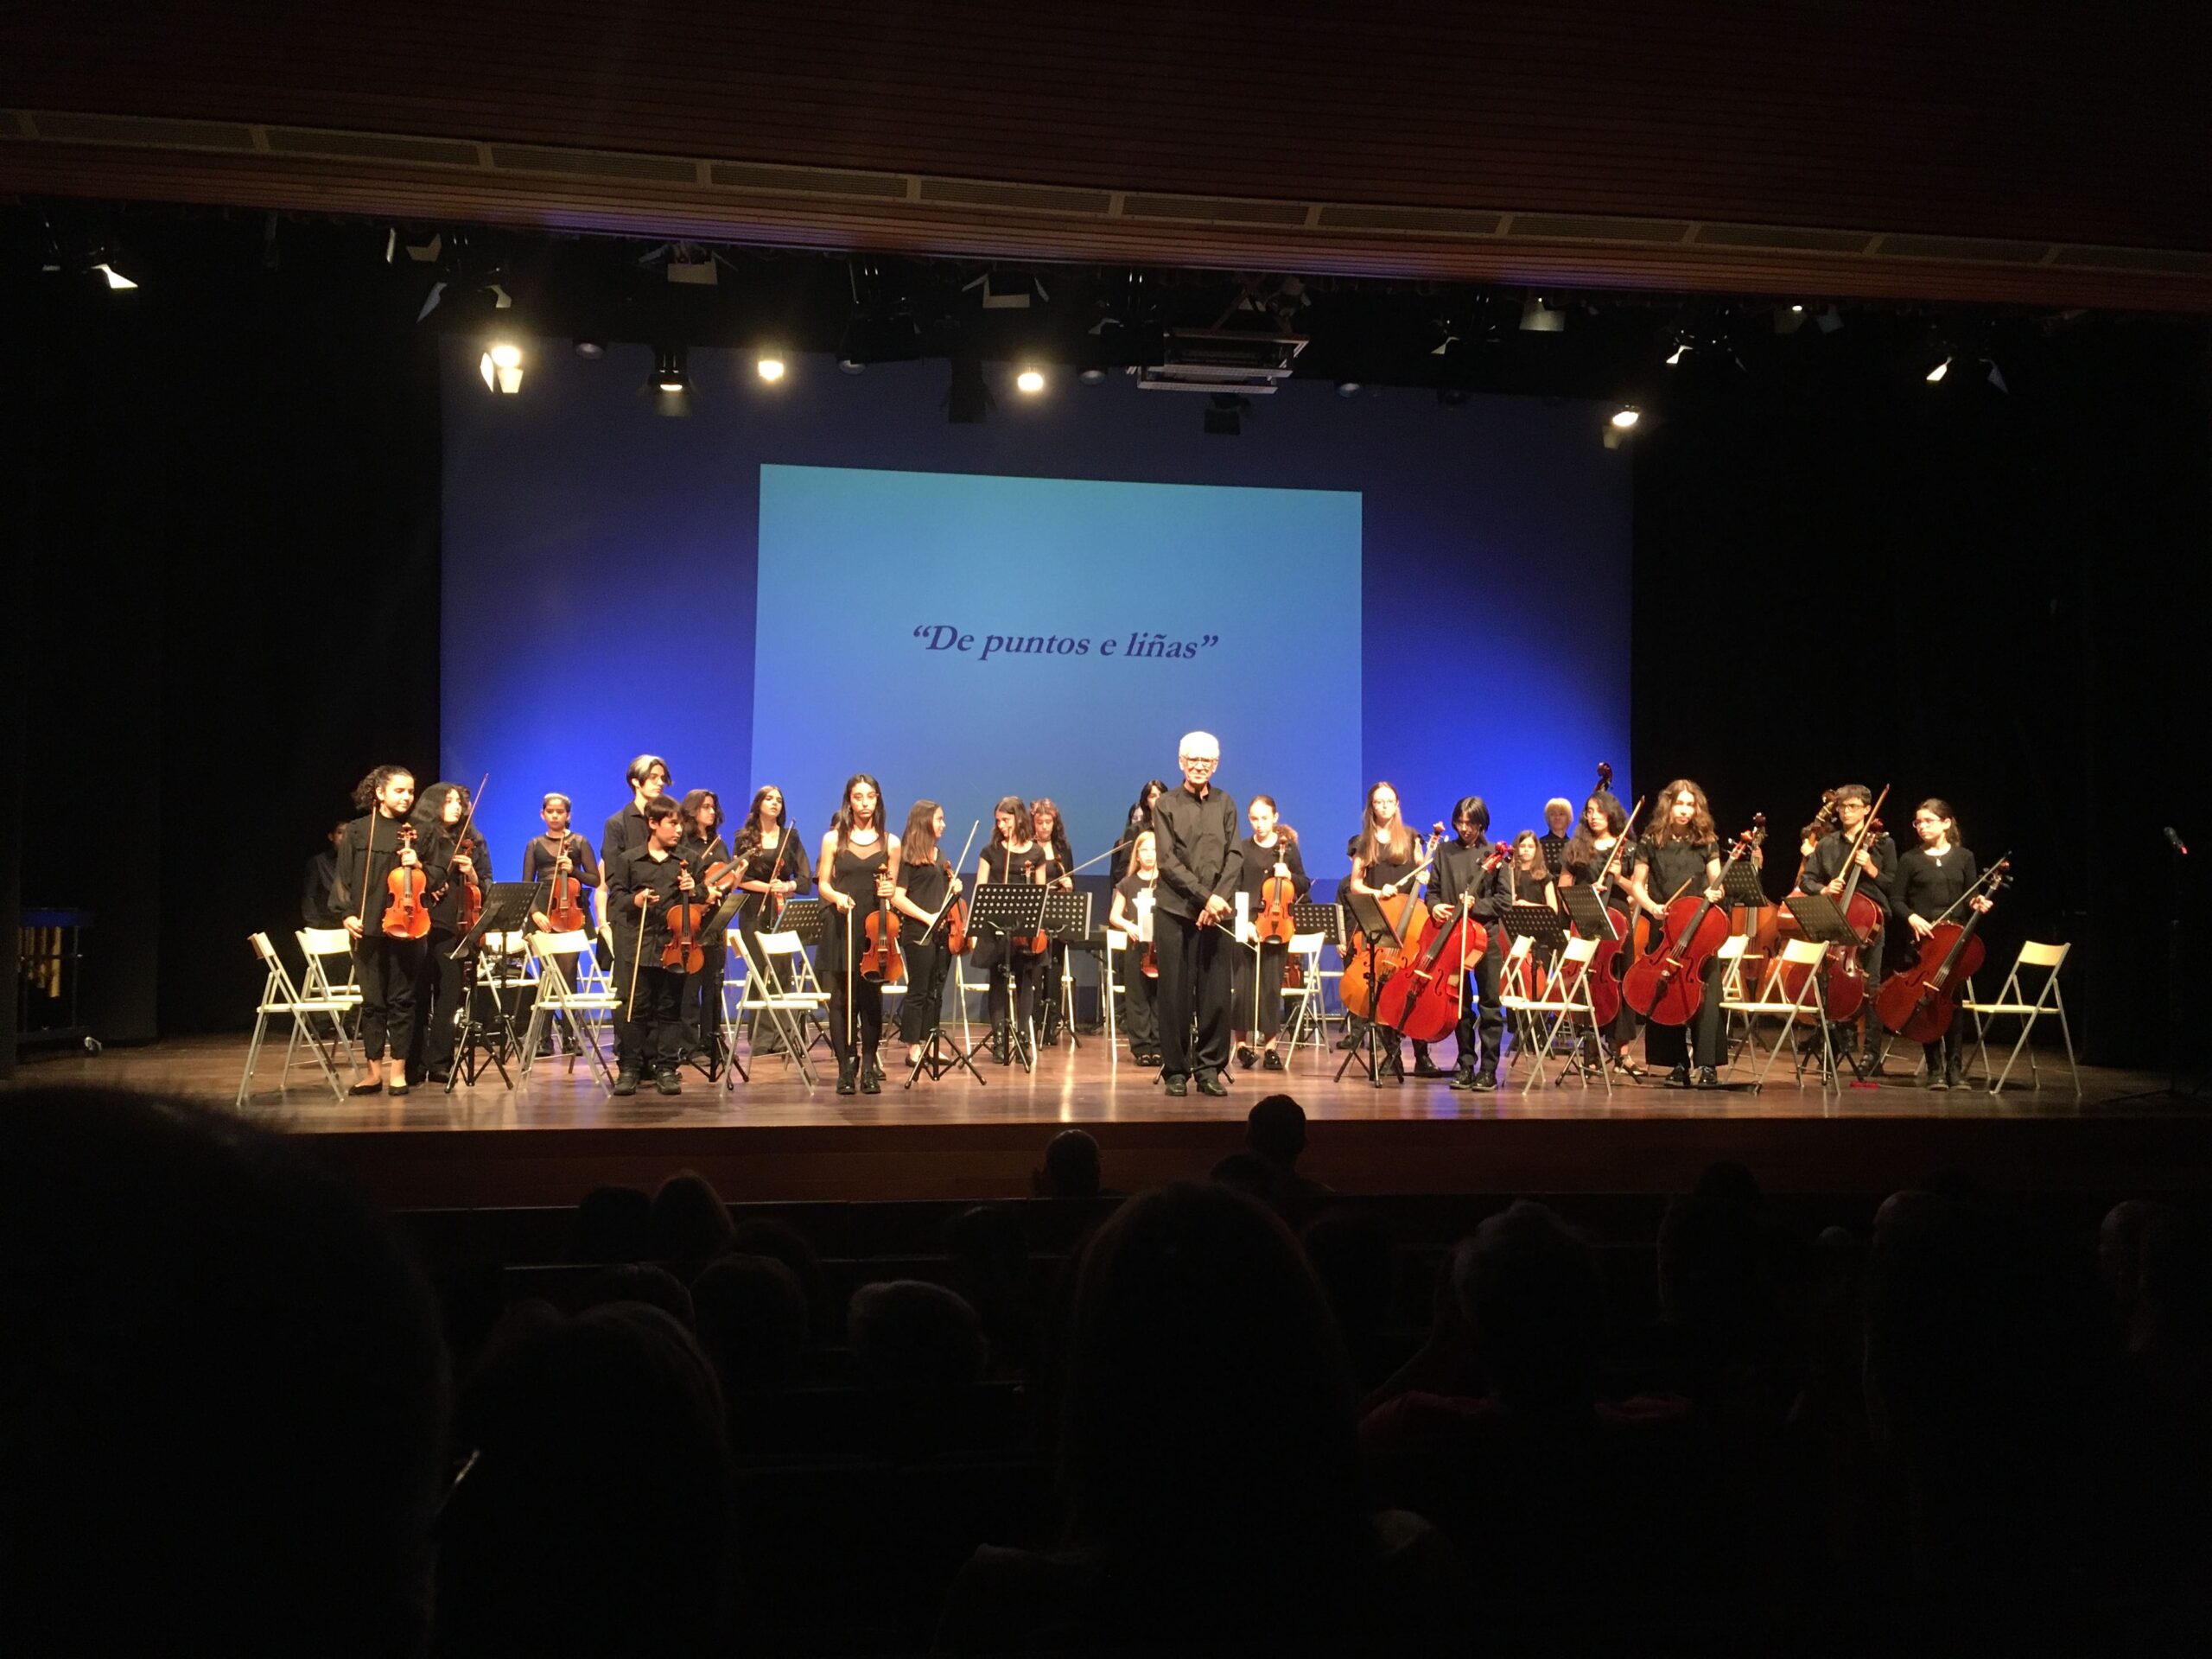 La Orquestra Infantil e Xuvenil de Vigo Kv2211 anuncia pruebas de acceso para instrumentistas de cuerda